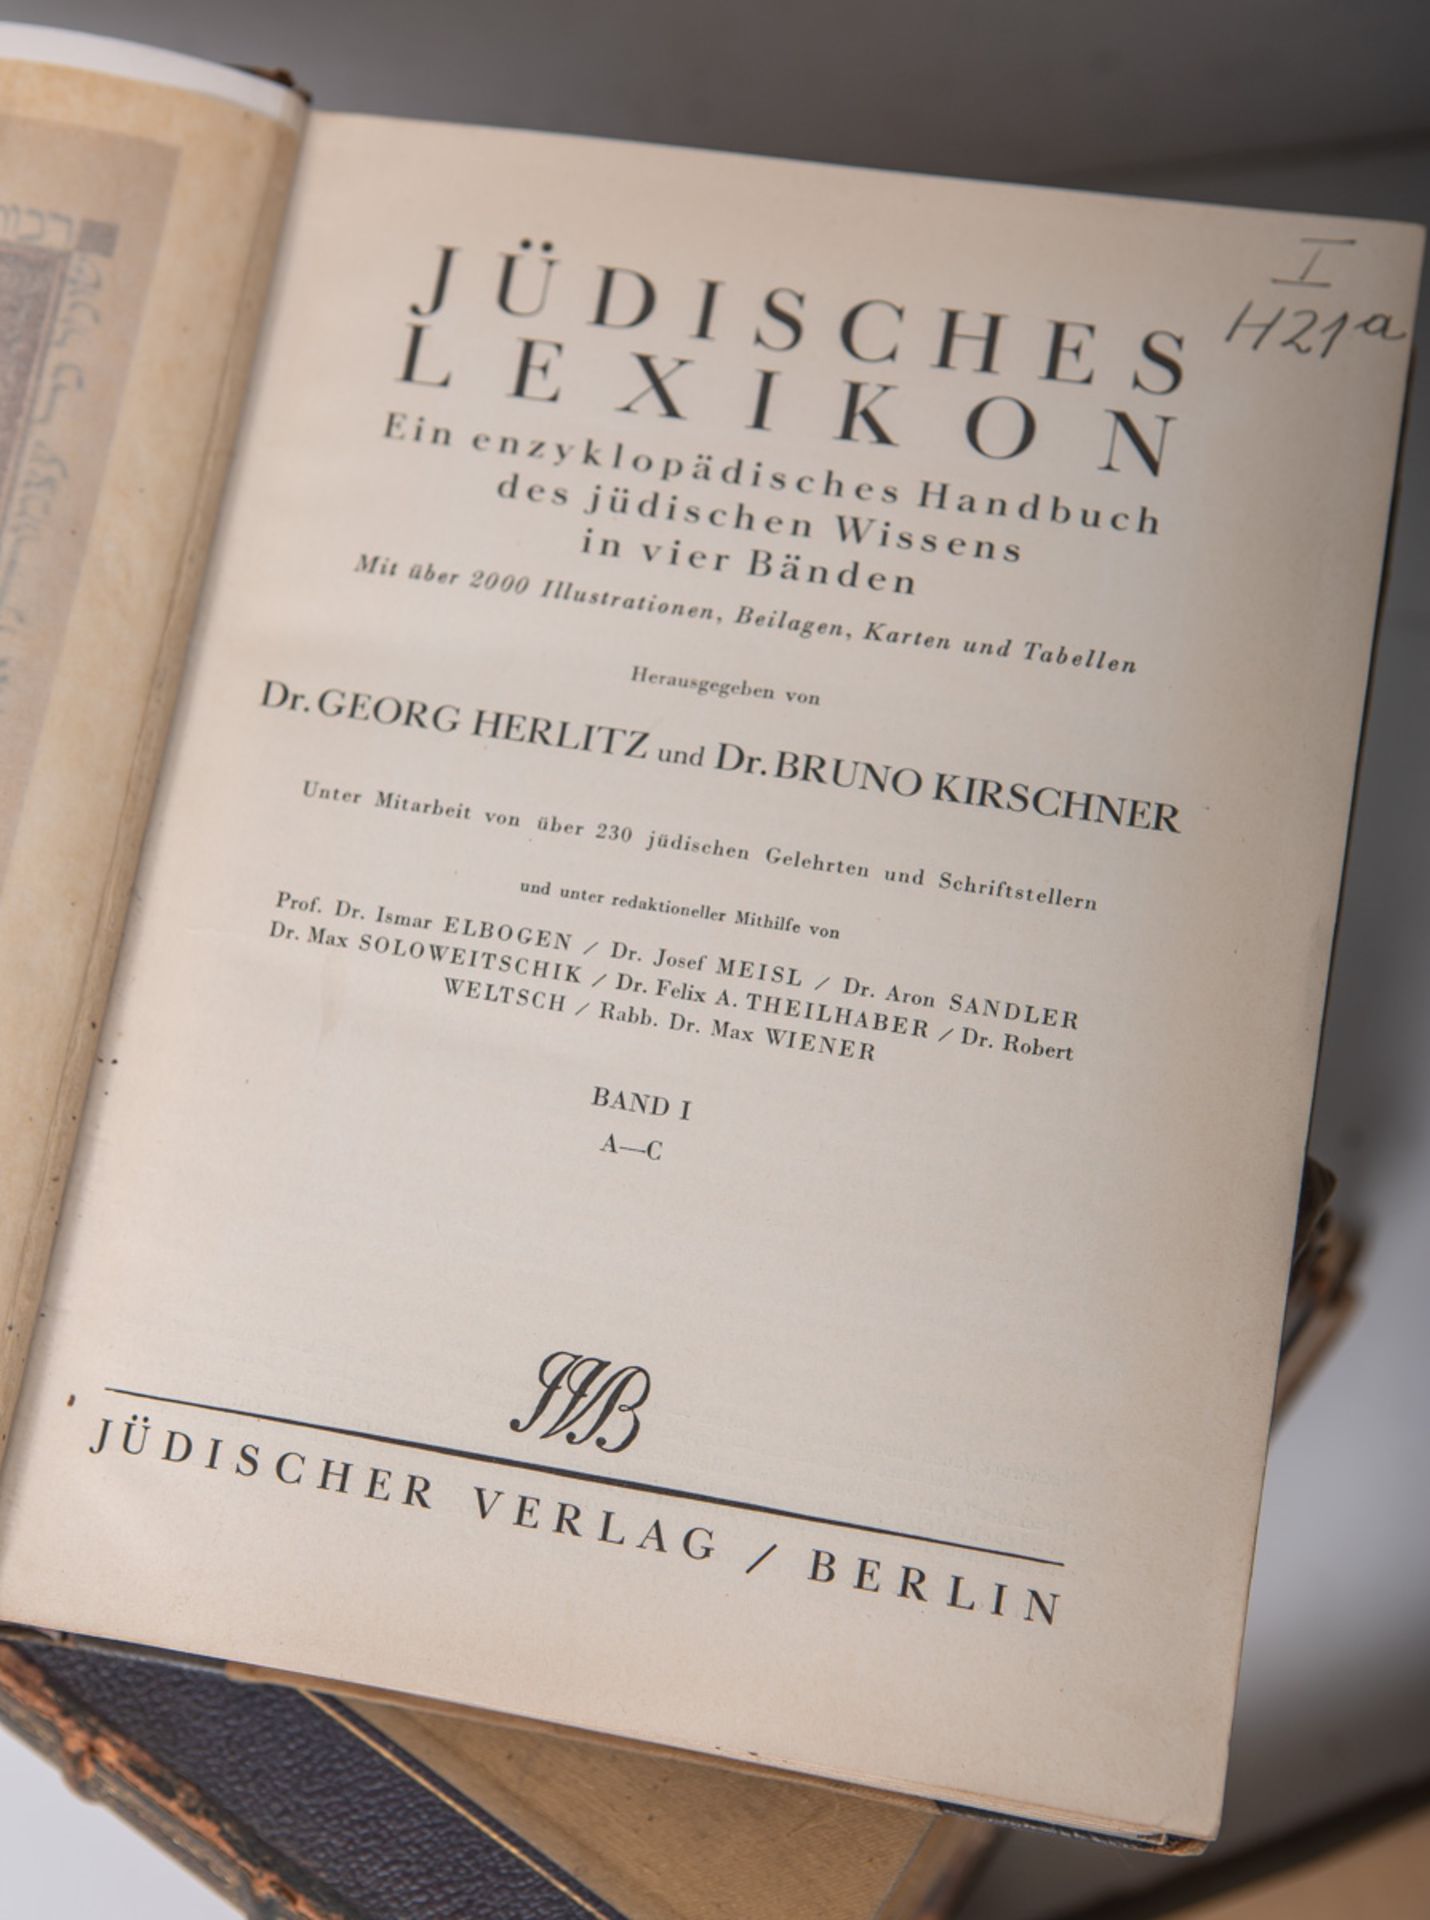 Jüdisches Lexikon, ein enzyklopädisches Handbuch des jüdischen Wissens in 4 Bänden - Bild 2 aus 2